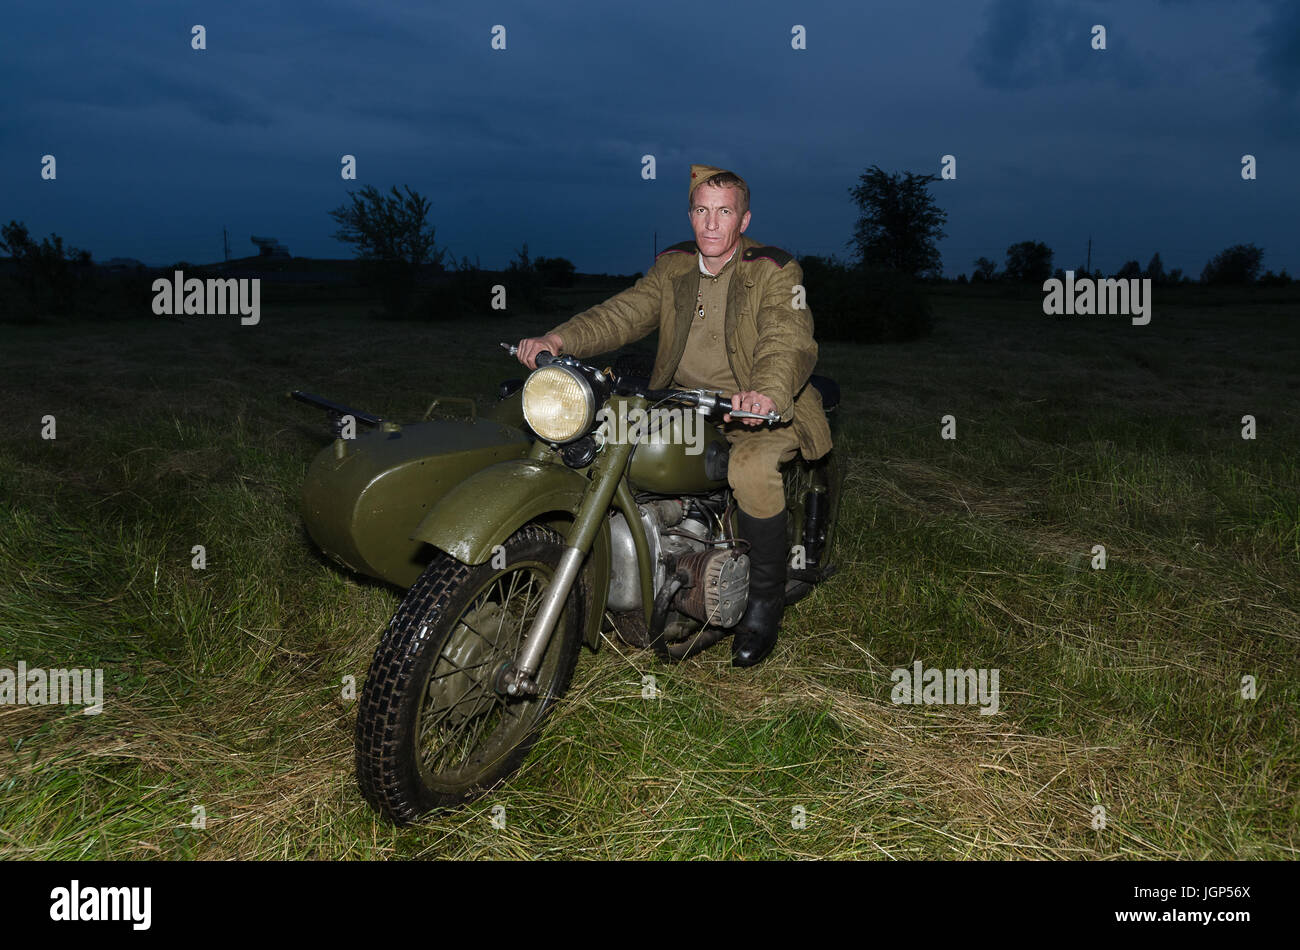 Festival der Militärgeschichte des Russlands des XX. Jahrhunderts. Togliatti, 7. Juli 2017. Soldat der Roten Armee auf einem Motorrad. Stockfoto